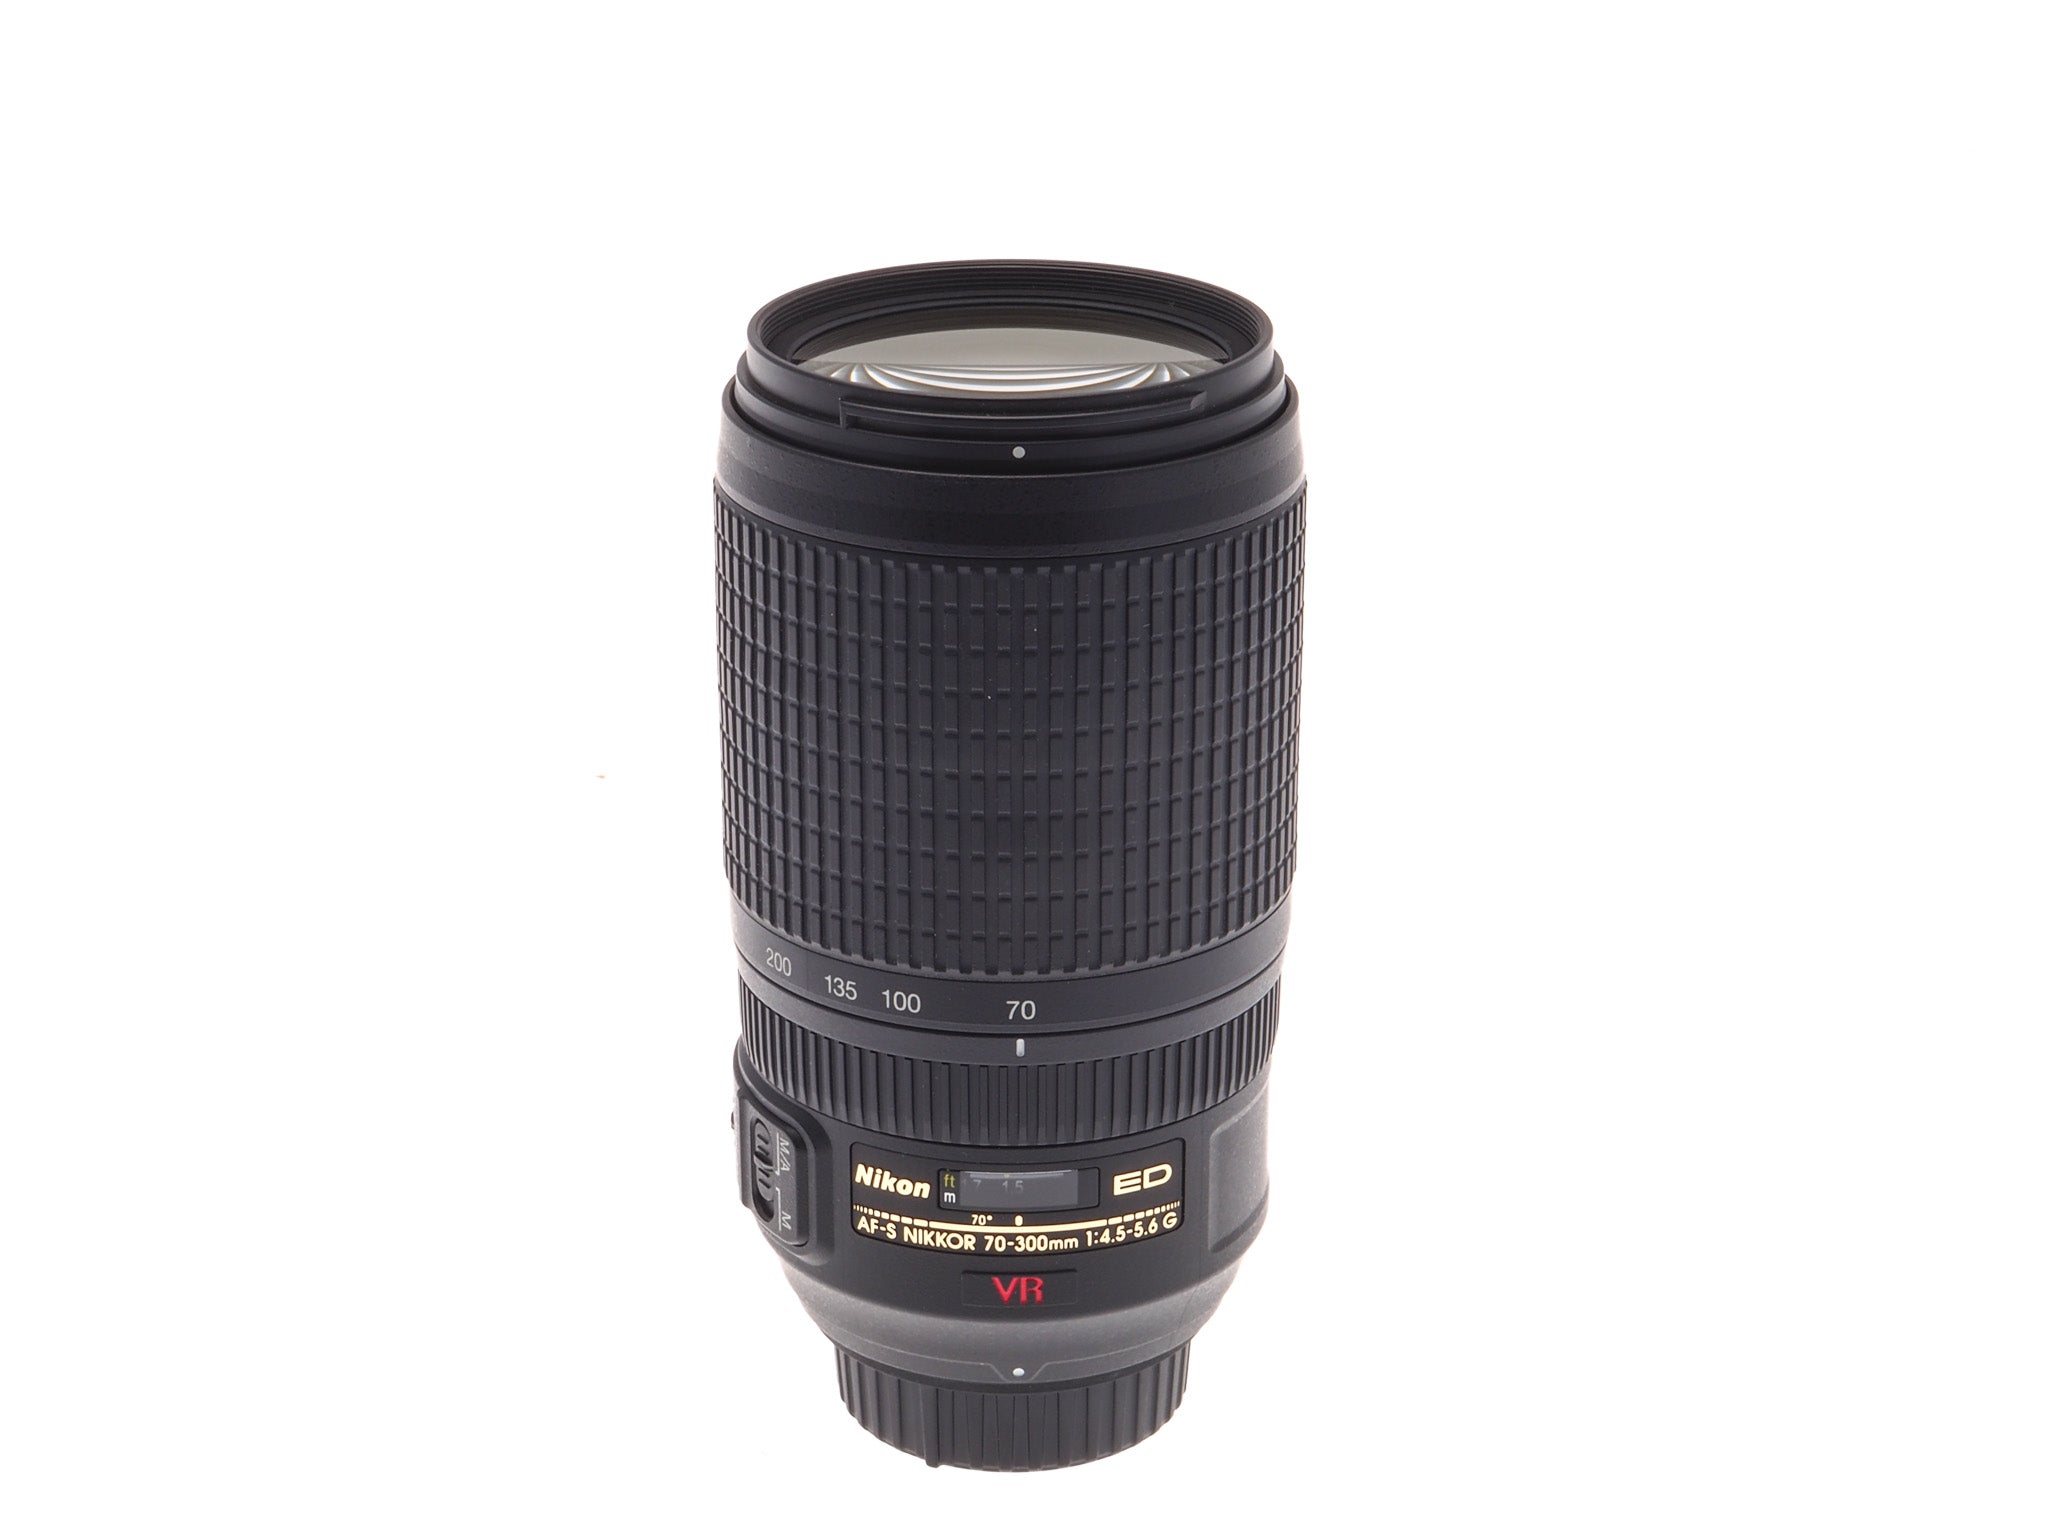 Nikon 70-300mm f4.5-5.6 G ED VR AF-S Nikkor - Lens